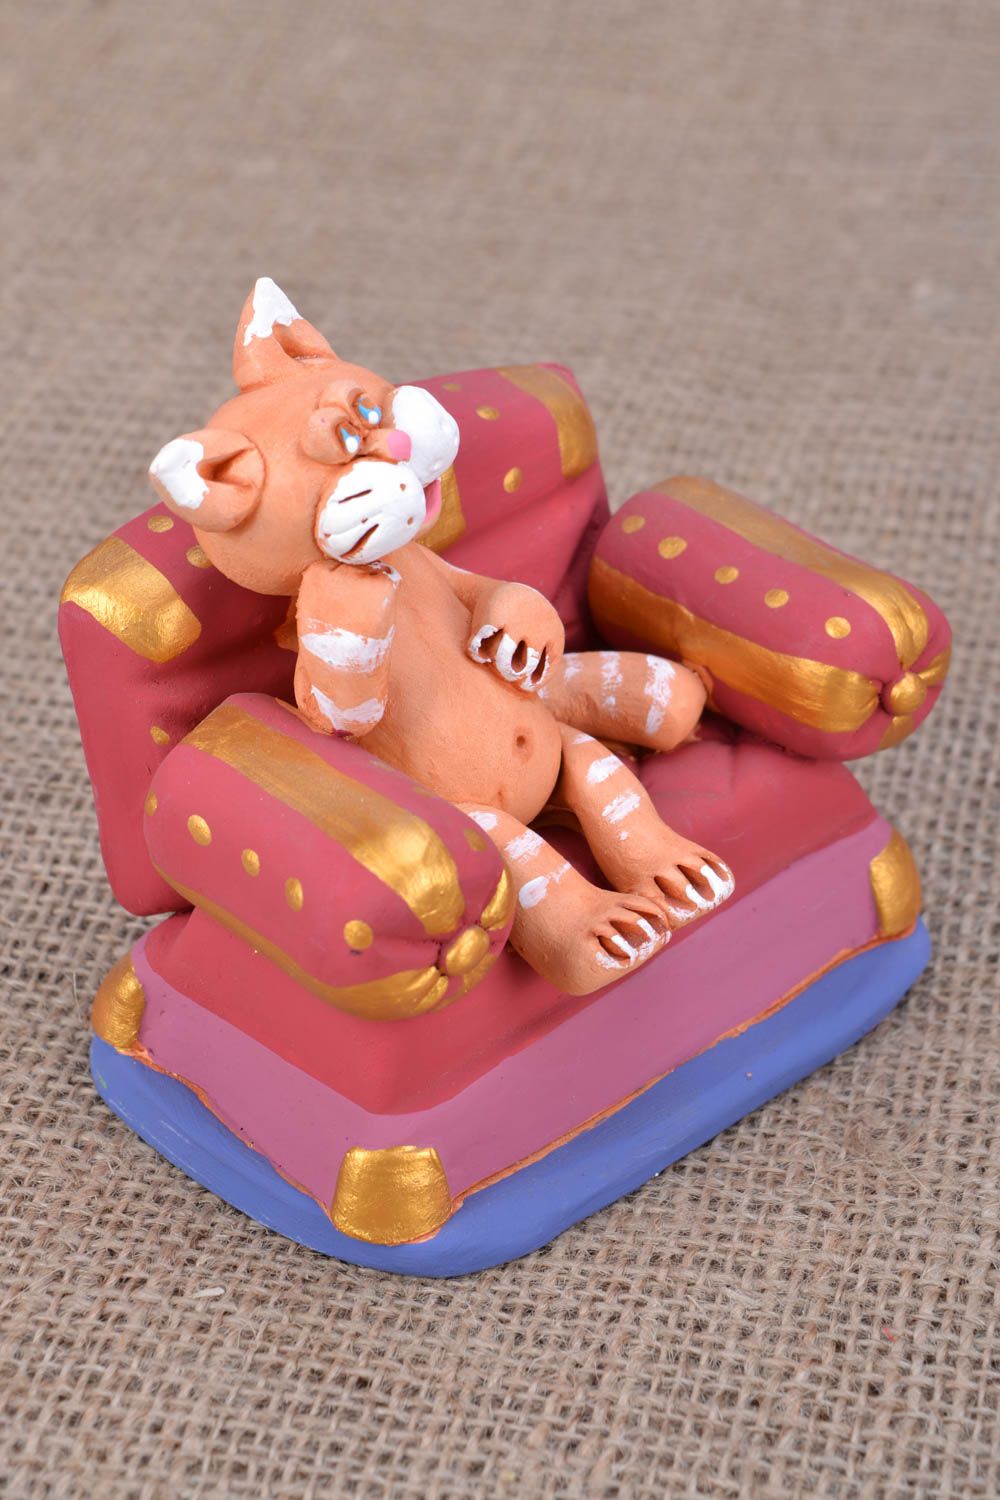 Funny ceramic figurine of cat photo 1